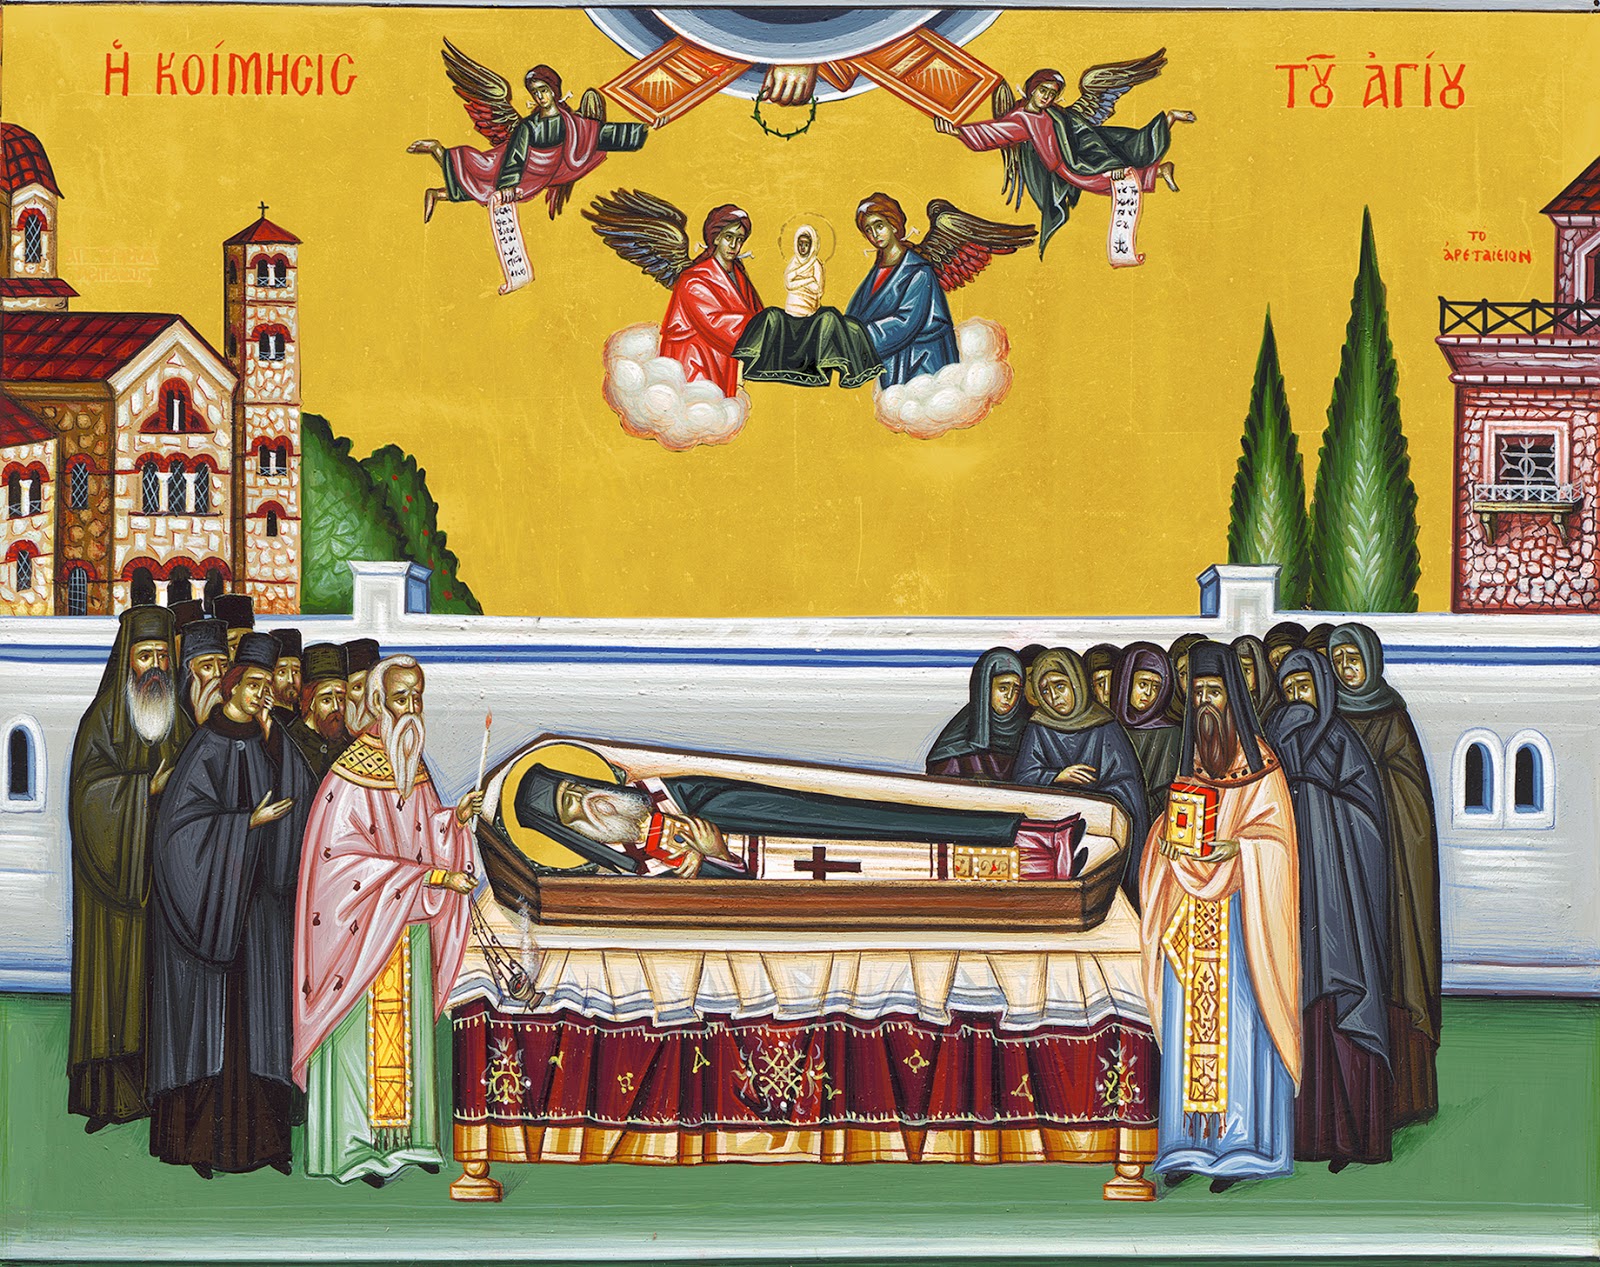 Ανακομιδή των Λειψάνων του Αγίου Νεκταρίου – Η Ιερά Εικόνα της Παναγίας Ξενιάς στην Ν. Ιωνία